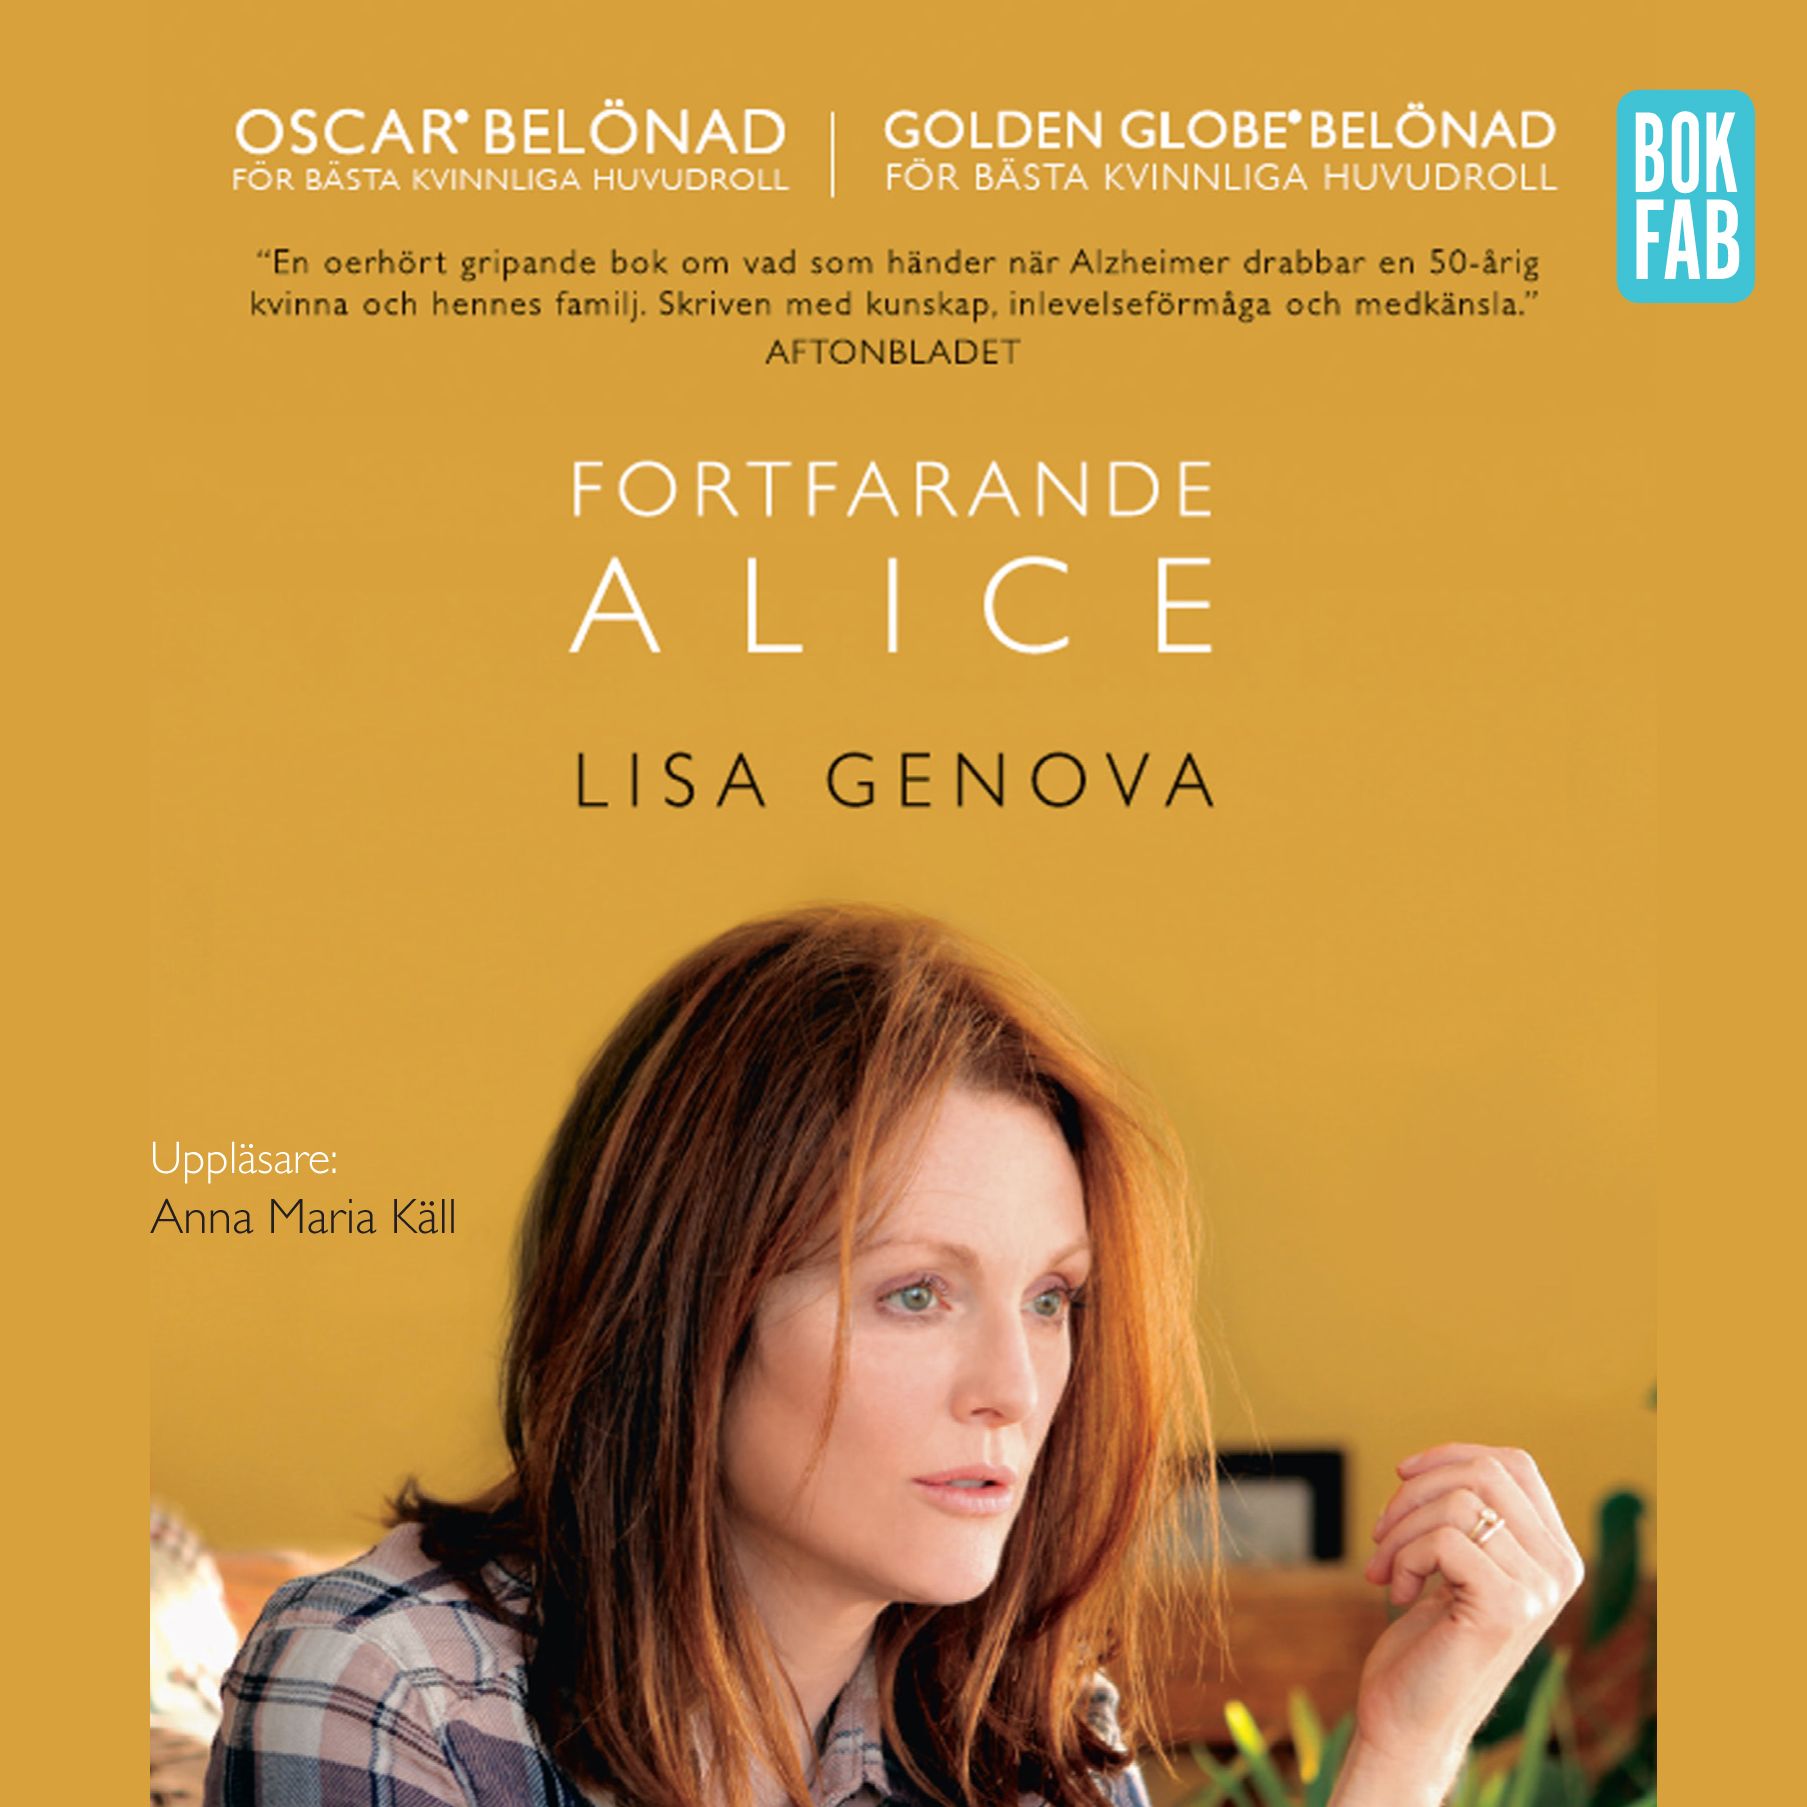 Fortfarande Alice, ljudbok av Lisa Genova